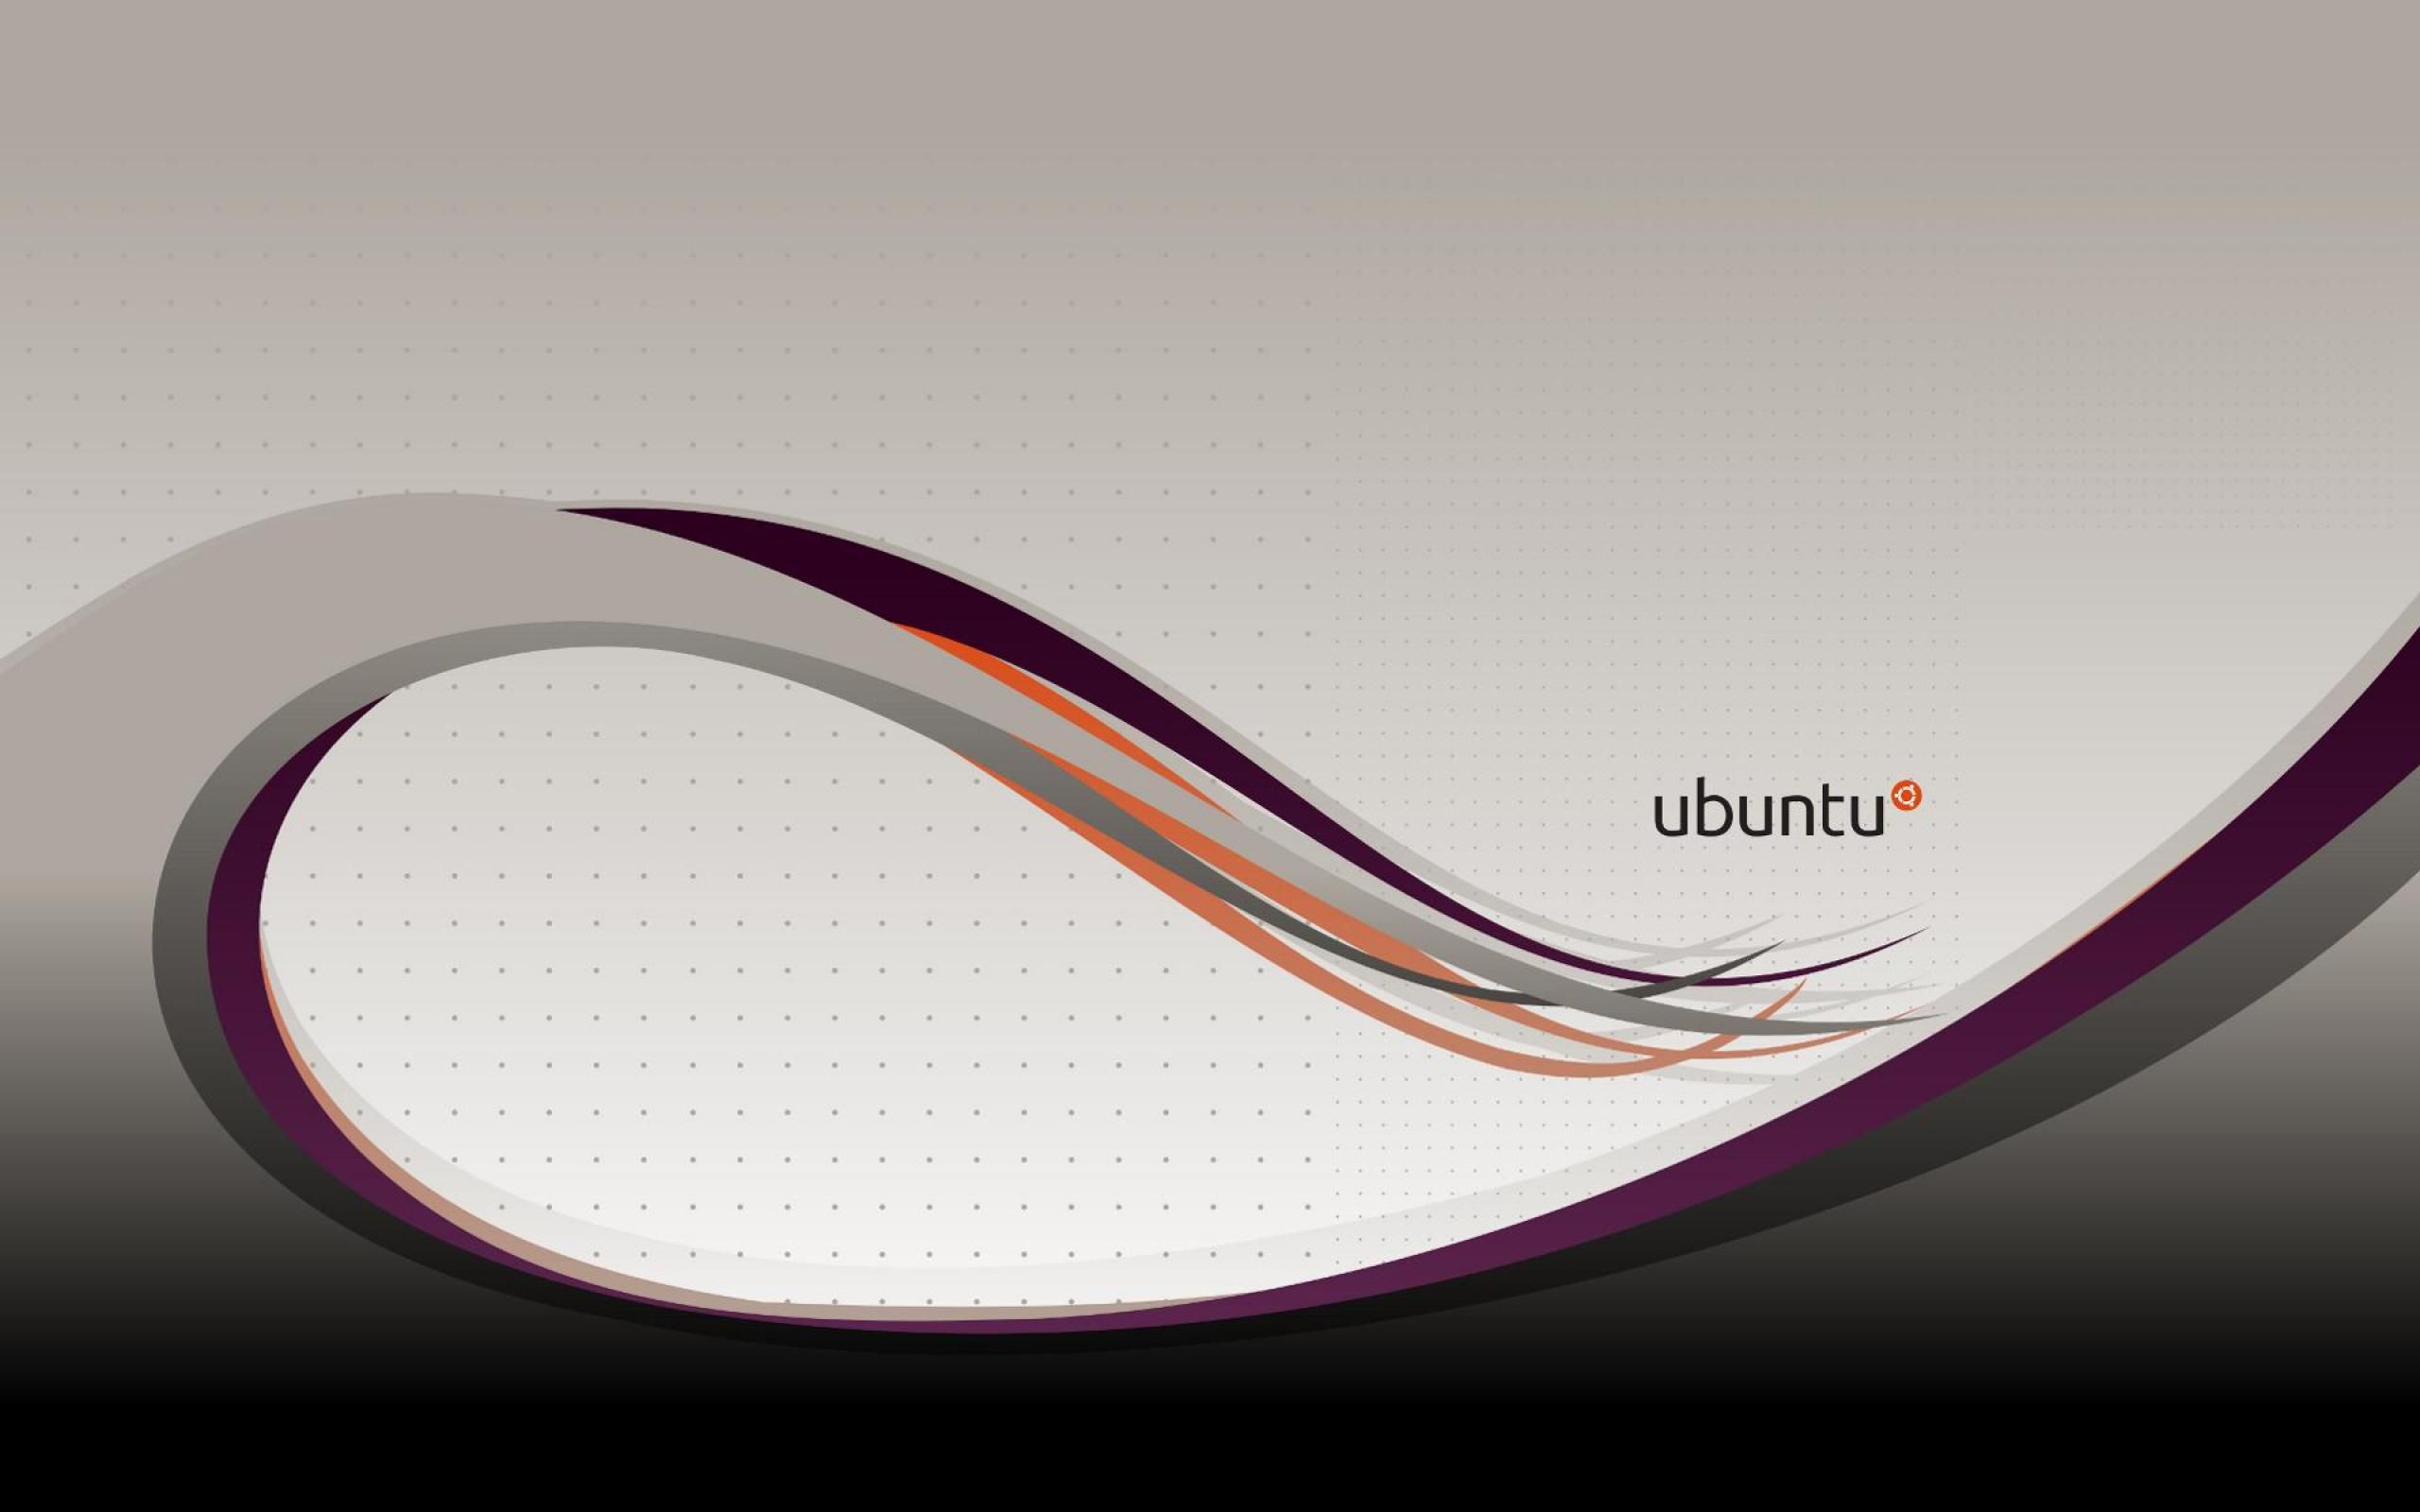 Ubuntu Backgrounds - High-quality Ubuntu background images for your PC